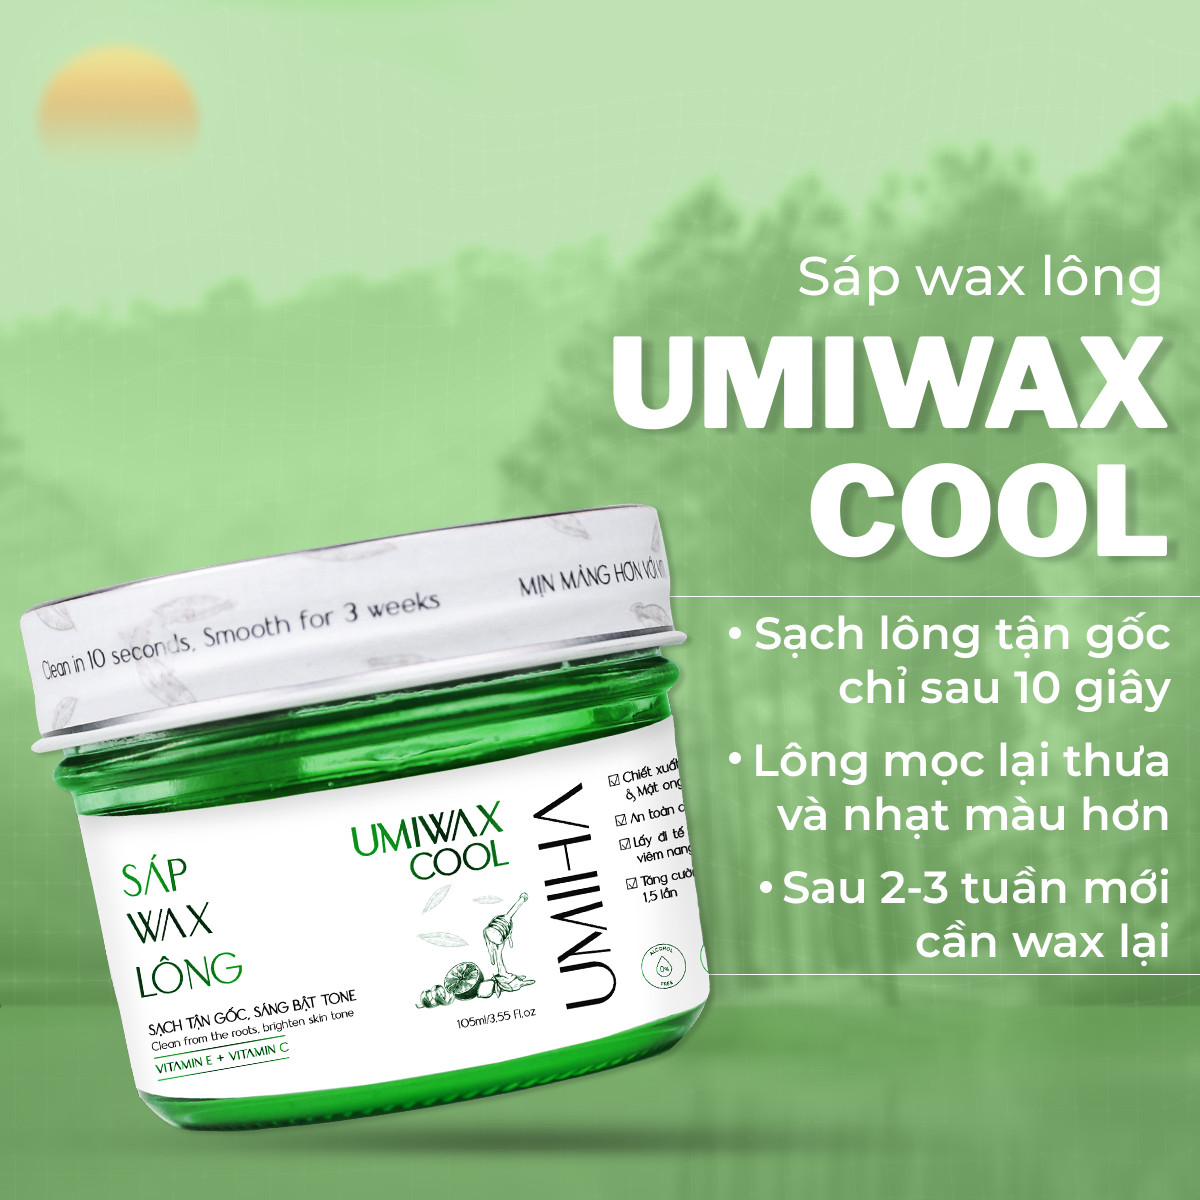 Sáp wax lông lạnh UMIHA 105ML dùng cho wax lông Nách, Chân, Tay, Body an toàn hiệu quả